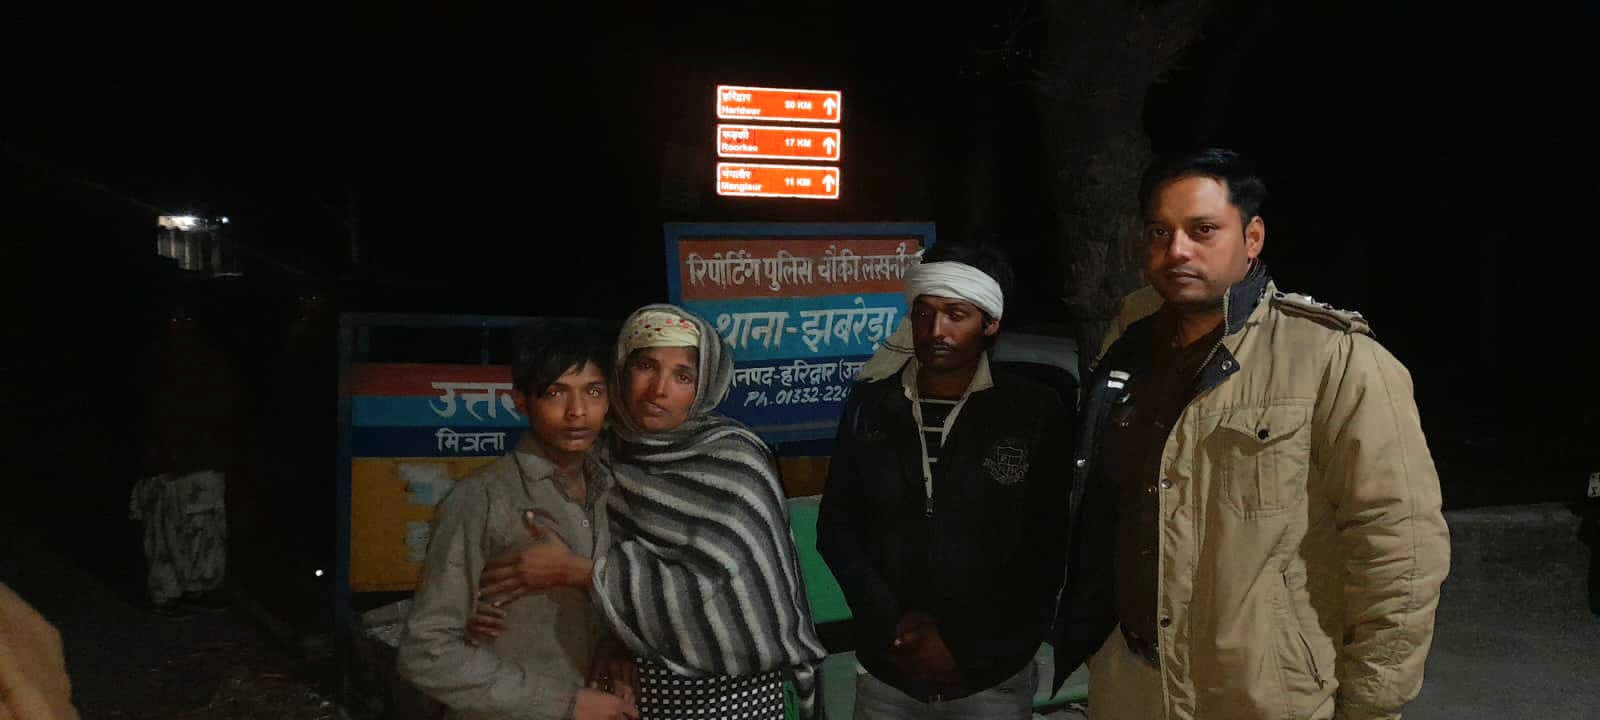 2 माह से लापता बालक दिल्ली से बरामद,पुलिस ने परिजनों को सौंपा